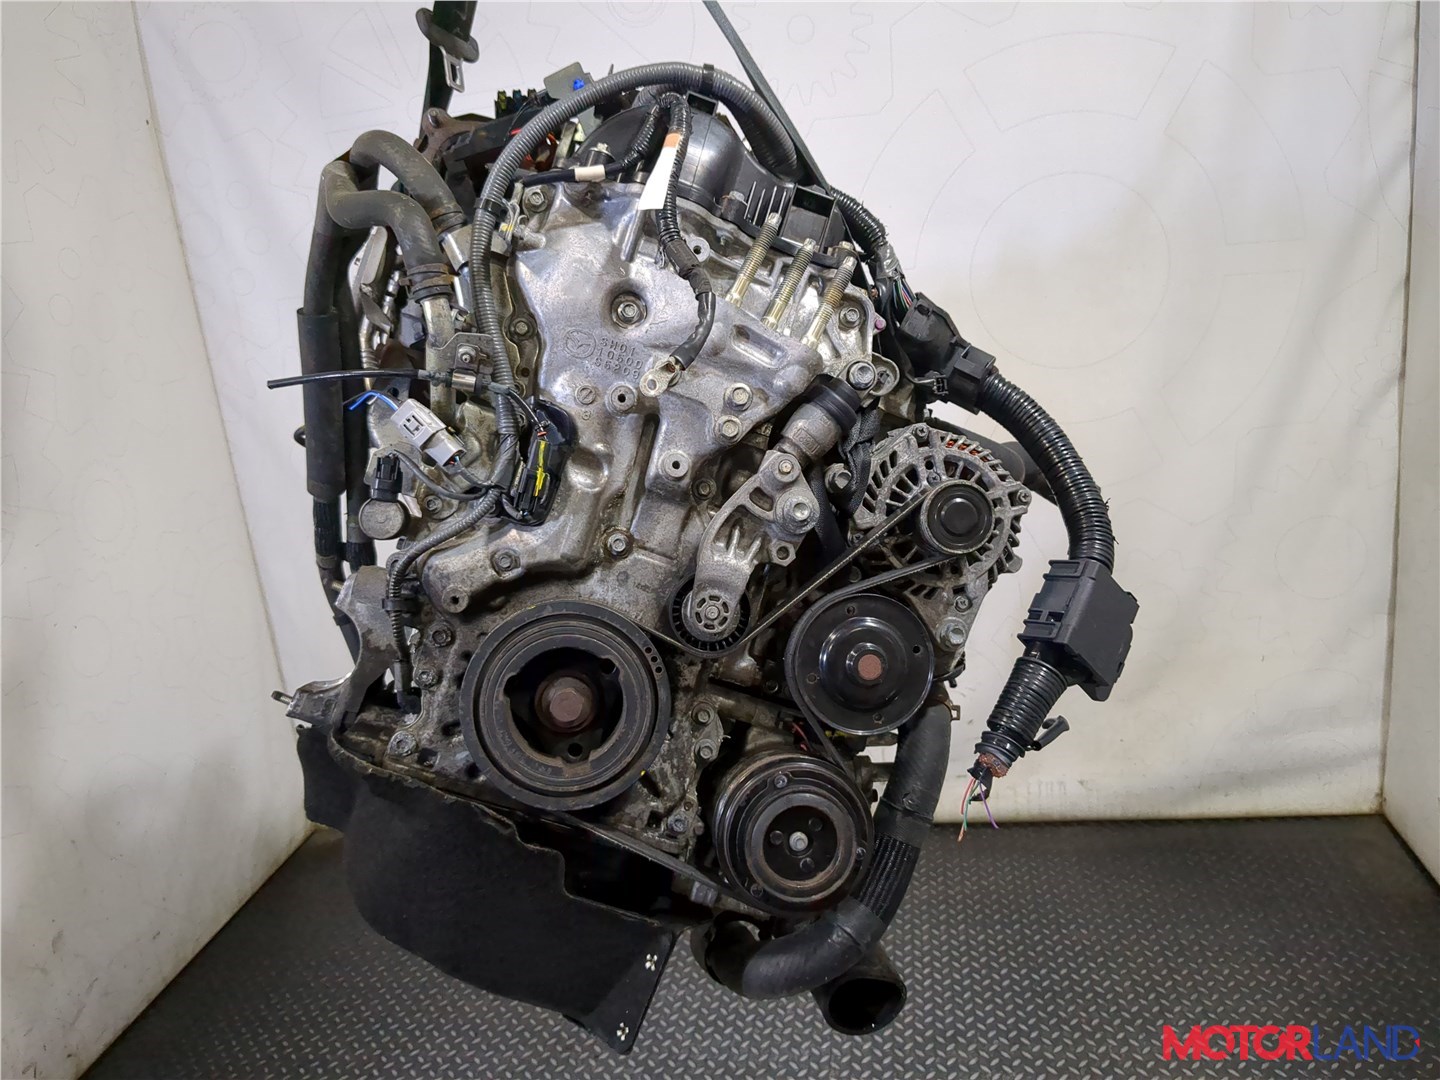 Технические характеристики мотора Mazda L5-VE 2.5 литра